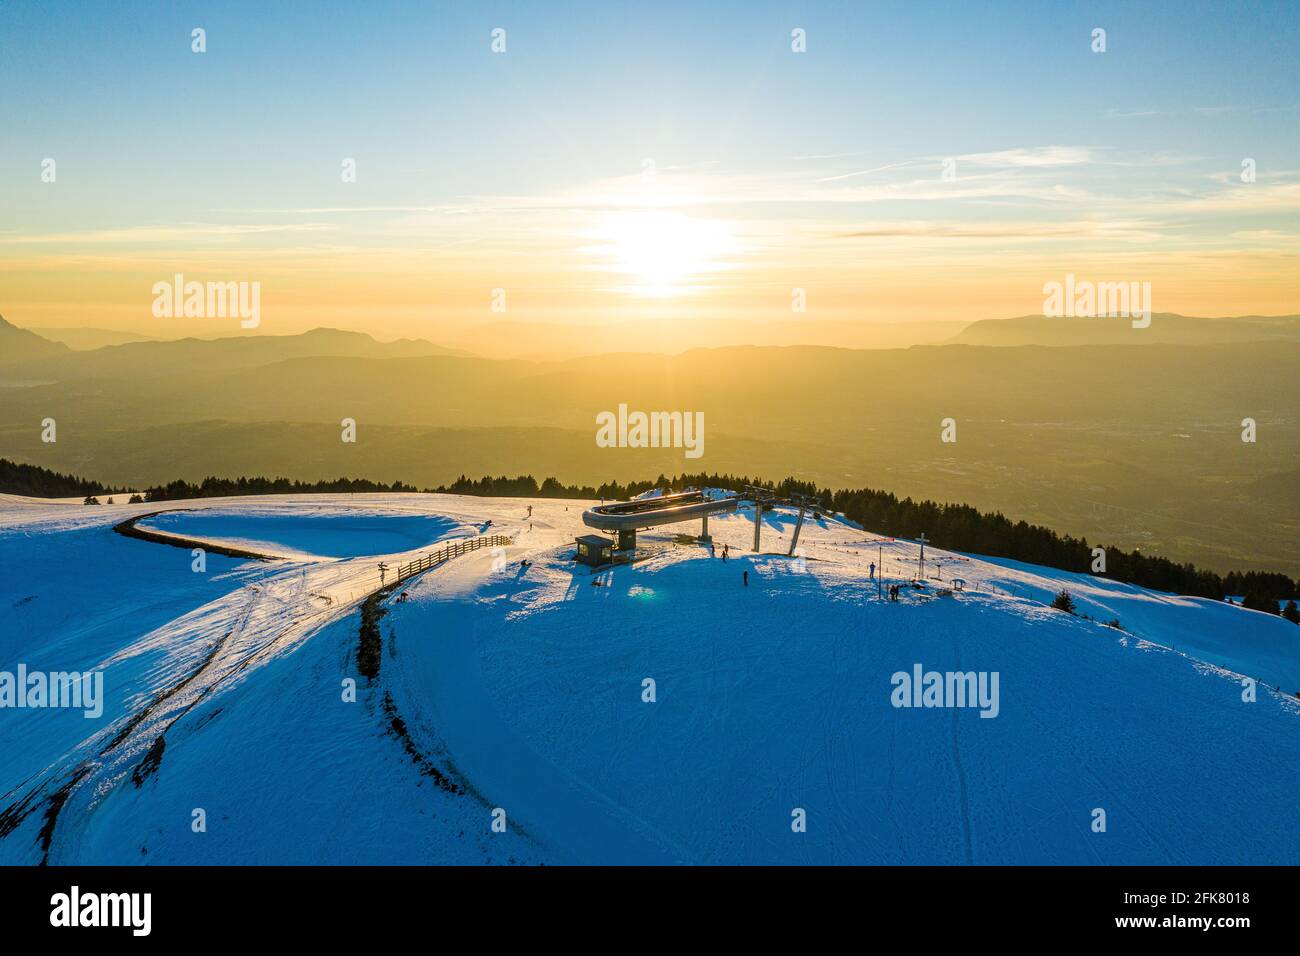 Luftaufnahme einer Skiliftstation auf einem verschneiten Berg bei Sonnenaufgang/Sonnenuntergang. Stockfoto